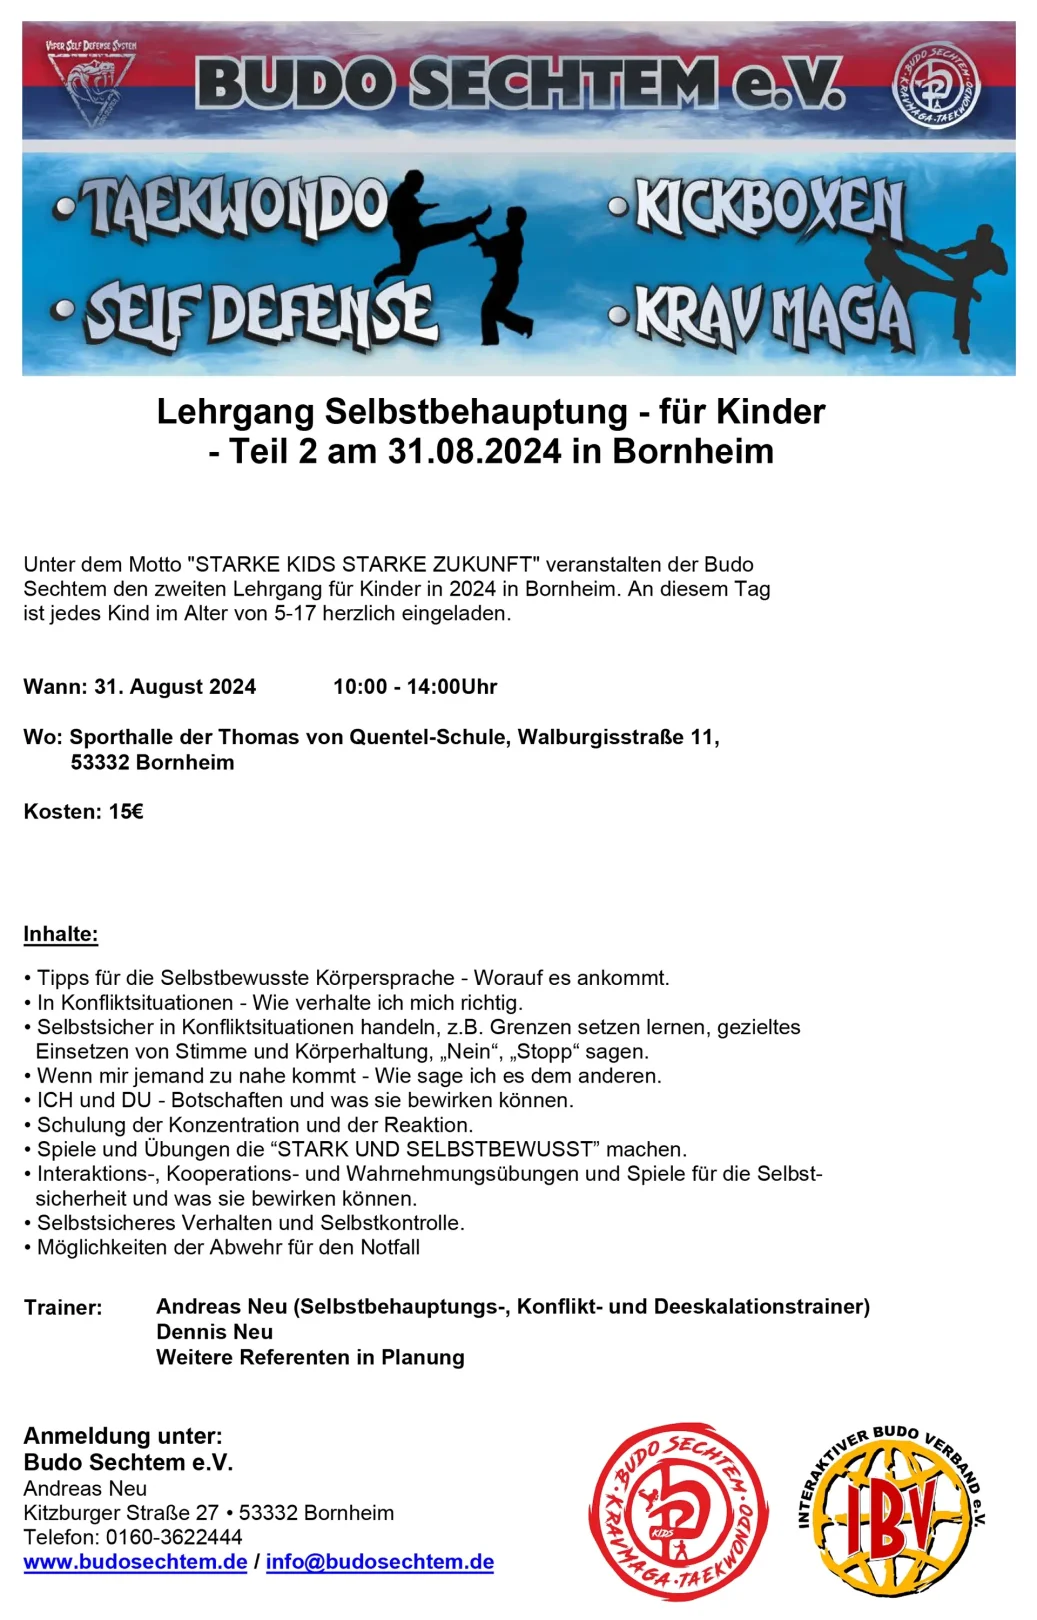 Selbstbehauptungstraining für Kinder des Budo Sechtem e.V. am 31. August 2024 in Bornheim